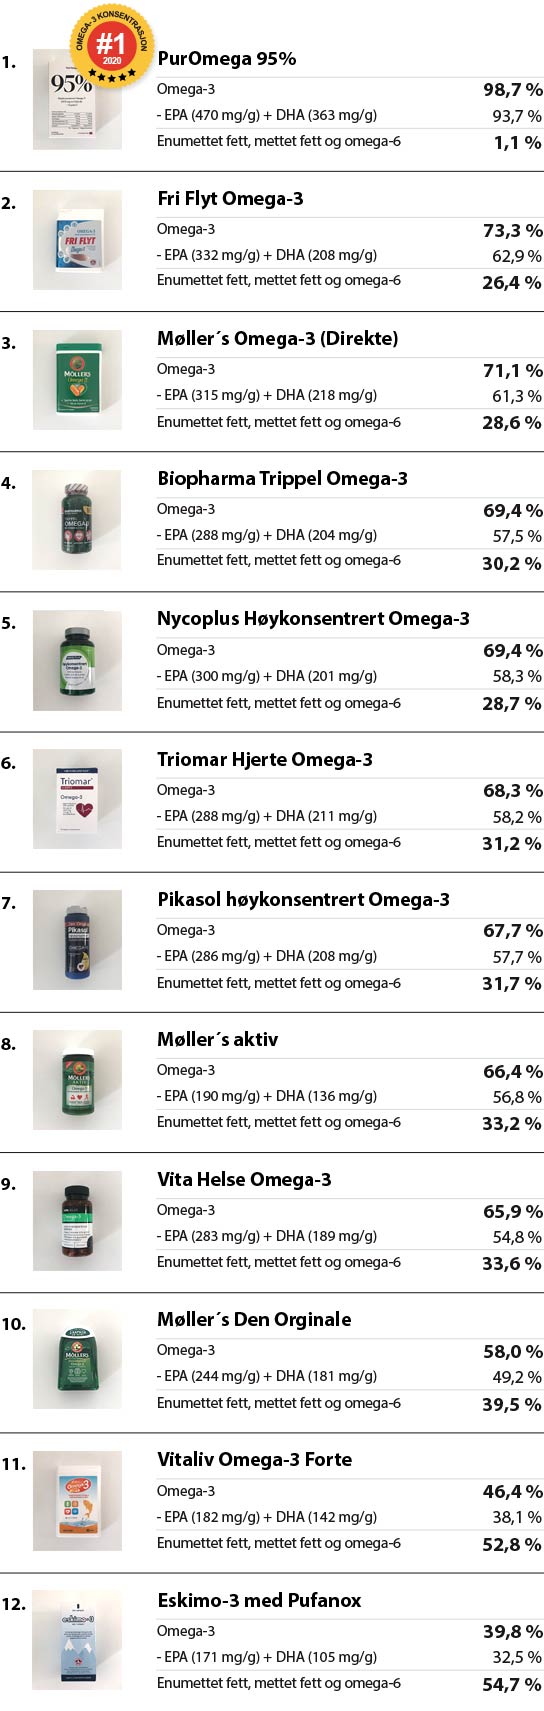 Liste over de testede produktene, sortert etter omega-3 konsentrasjon. 1. PurOmega 95% inneholder 98,7% omega-3, hvorav EPA(470mg/g) + DHA (363mg/g) - 93,7% og unødvendig fett 1,1% (Best i test). 2. Fri Flyt inneholder 73,3% omega-3, hvorav EPA(332mg/g) + DHA (208 mg/g) - 62,9% og unødvendig fett 26,4%. 3. Møller's Direkte inneholder 71,1% omega-3, hvorav EPA(315mg/g) + DHA (218mg/g) - 61,3% og unødvendig fett 28,6%. 4. Biopharma Trippel inneholder 69,4% omega-3, hvorav EPA(288mg/g) + DHA (204mg/g) - 57,5% og unødvendig fett 30,2%. 5. Nycoplus Høykonsentrert inneholder 69,4% omega-3, hvorav EPA(300mg/g) + DHA (201mg/g) - 58,3% og unødvendig fett 28,7%. 6. Triomar Hjerte inneholder 68,3% omega-3, hvorav EPA(288mg/g) + DHA (211mg/g) - 58,2% og unødvendig fett 31,2%. 7. Pikasol Høykonsentrert inneholder 67,7% omega-3, hvorav EPA(286mg/g) + DHA (208mg/g) - 57,7% og unødvendig fett 31,7%. 8. Møller´s Aktiv inneholder 66,4% omega-3, hvorav EPA(190mg/g) + DHA (136mg/g) - 56,8% og unødvendig fett 33,2%. 9. Vita Helse Omega-3 inneholder 65,9% omega-3, hvorav EPA(283mg/g) + DHA (189mg/g) - 54,8% og unødvendig fett 33,6%. 10. Møller's Orginale inneholder 58,0% omega-3, hvorav EPA(244mg/g) + DHA (181mg/g) - 49,2% og unødvendig fett 39,5%. 11. VitaLiv Omega-3 Forte inneholder 46,4% omega-3, hvorav EPA(182mg/g) + DHA (142mg/g) - 38,1% og unødvendig fett 52,8%. 12. Eskimo-3 med Pufanox inneholder 39,8% omega-3, hvorav EPA(171mg/g) + DHA (105mg/g) - 32,5% og unødvendig fett 54,7%. 